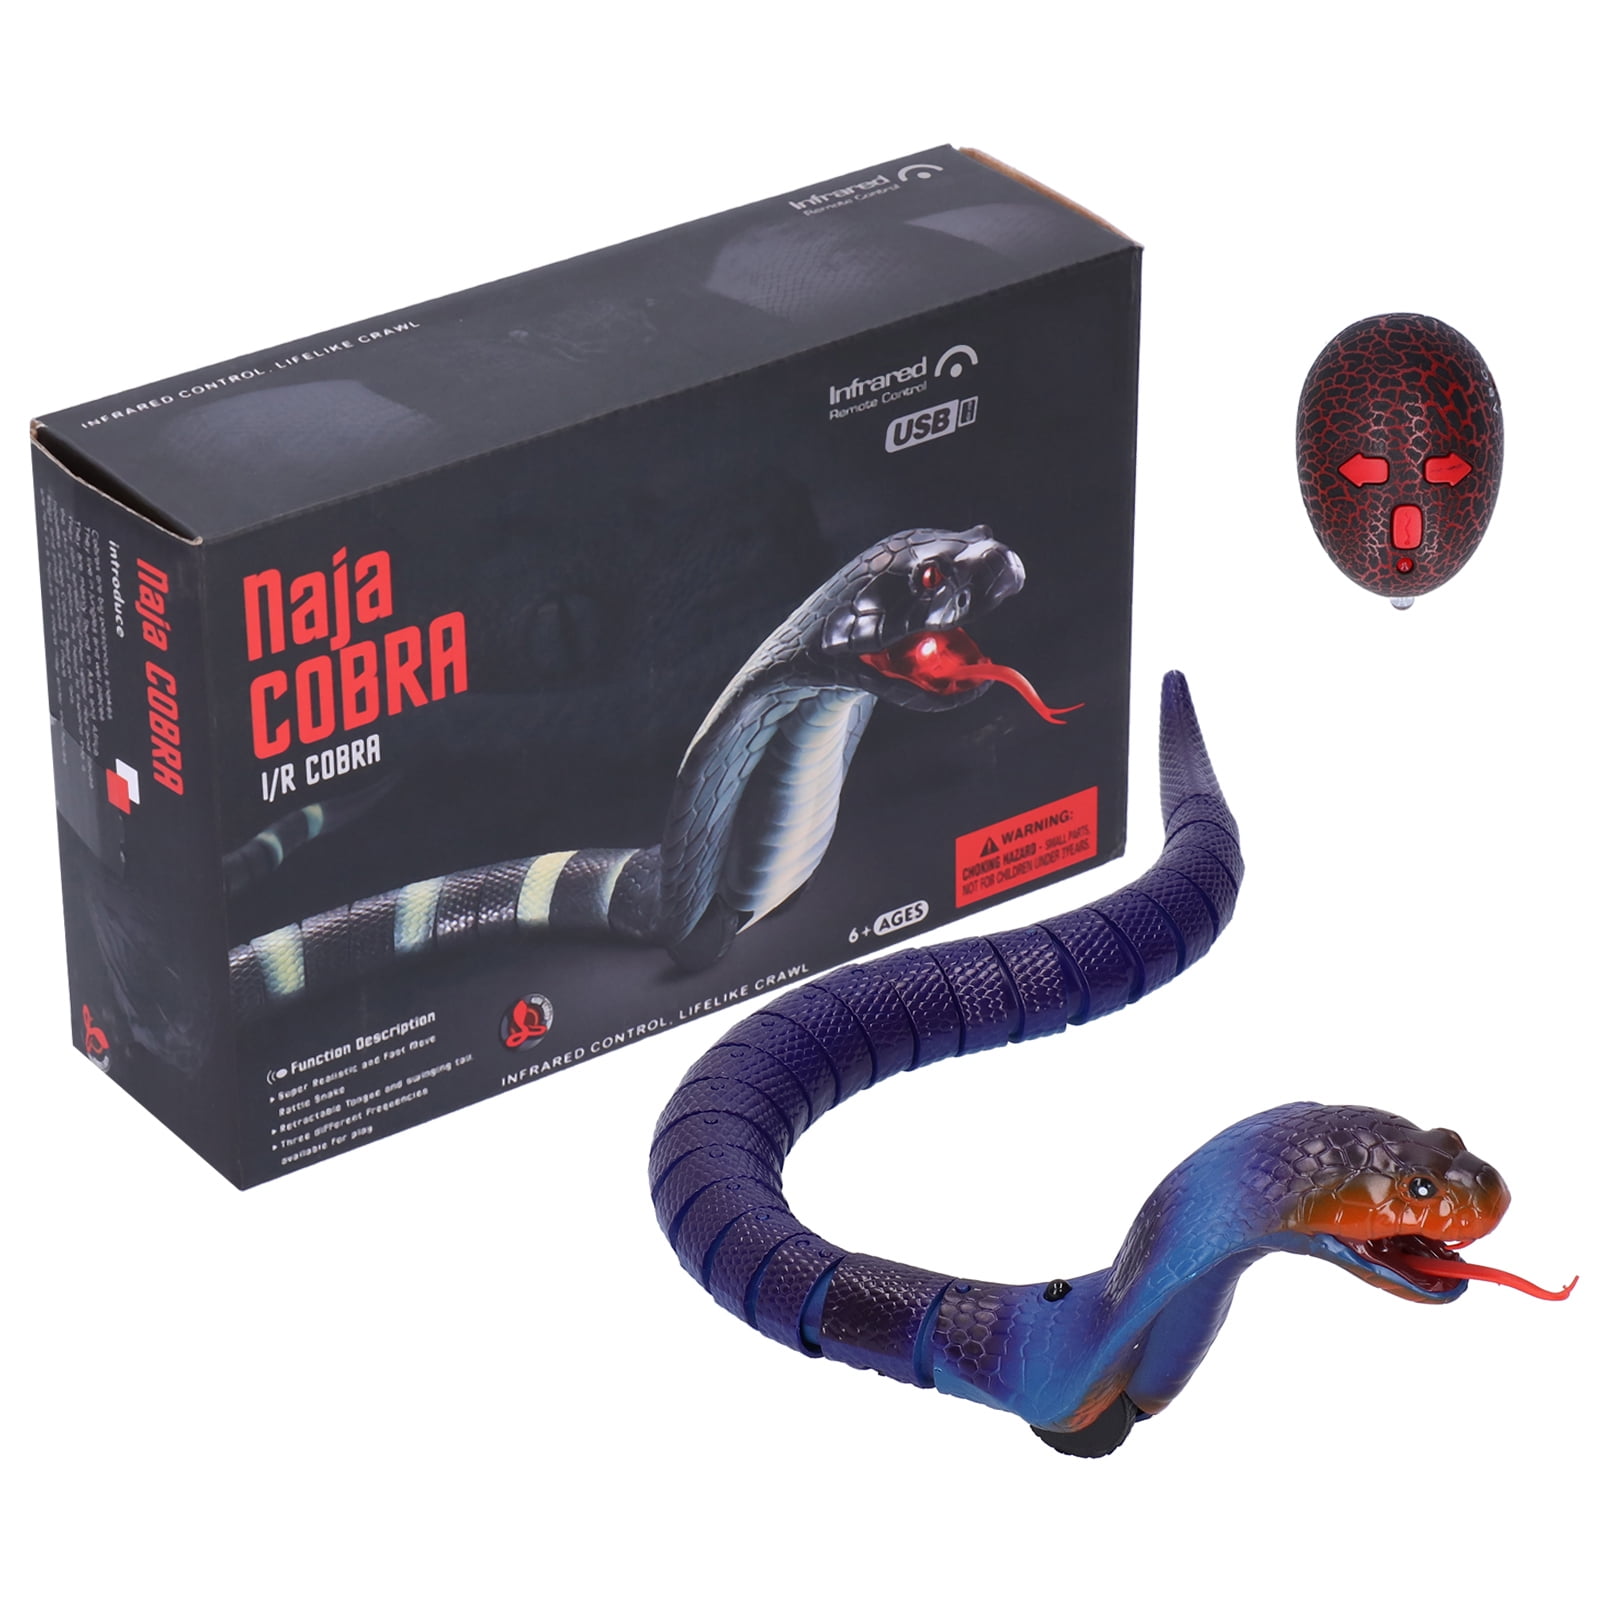 Télécommande simulée Serpent Télécommande électrique Snake Trick Toy